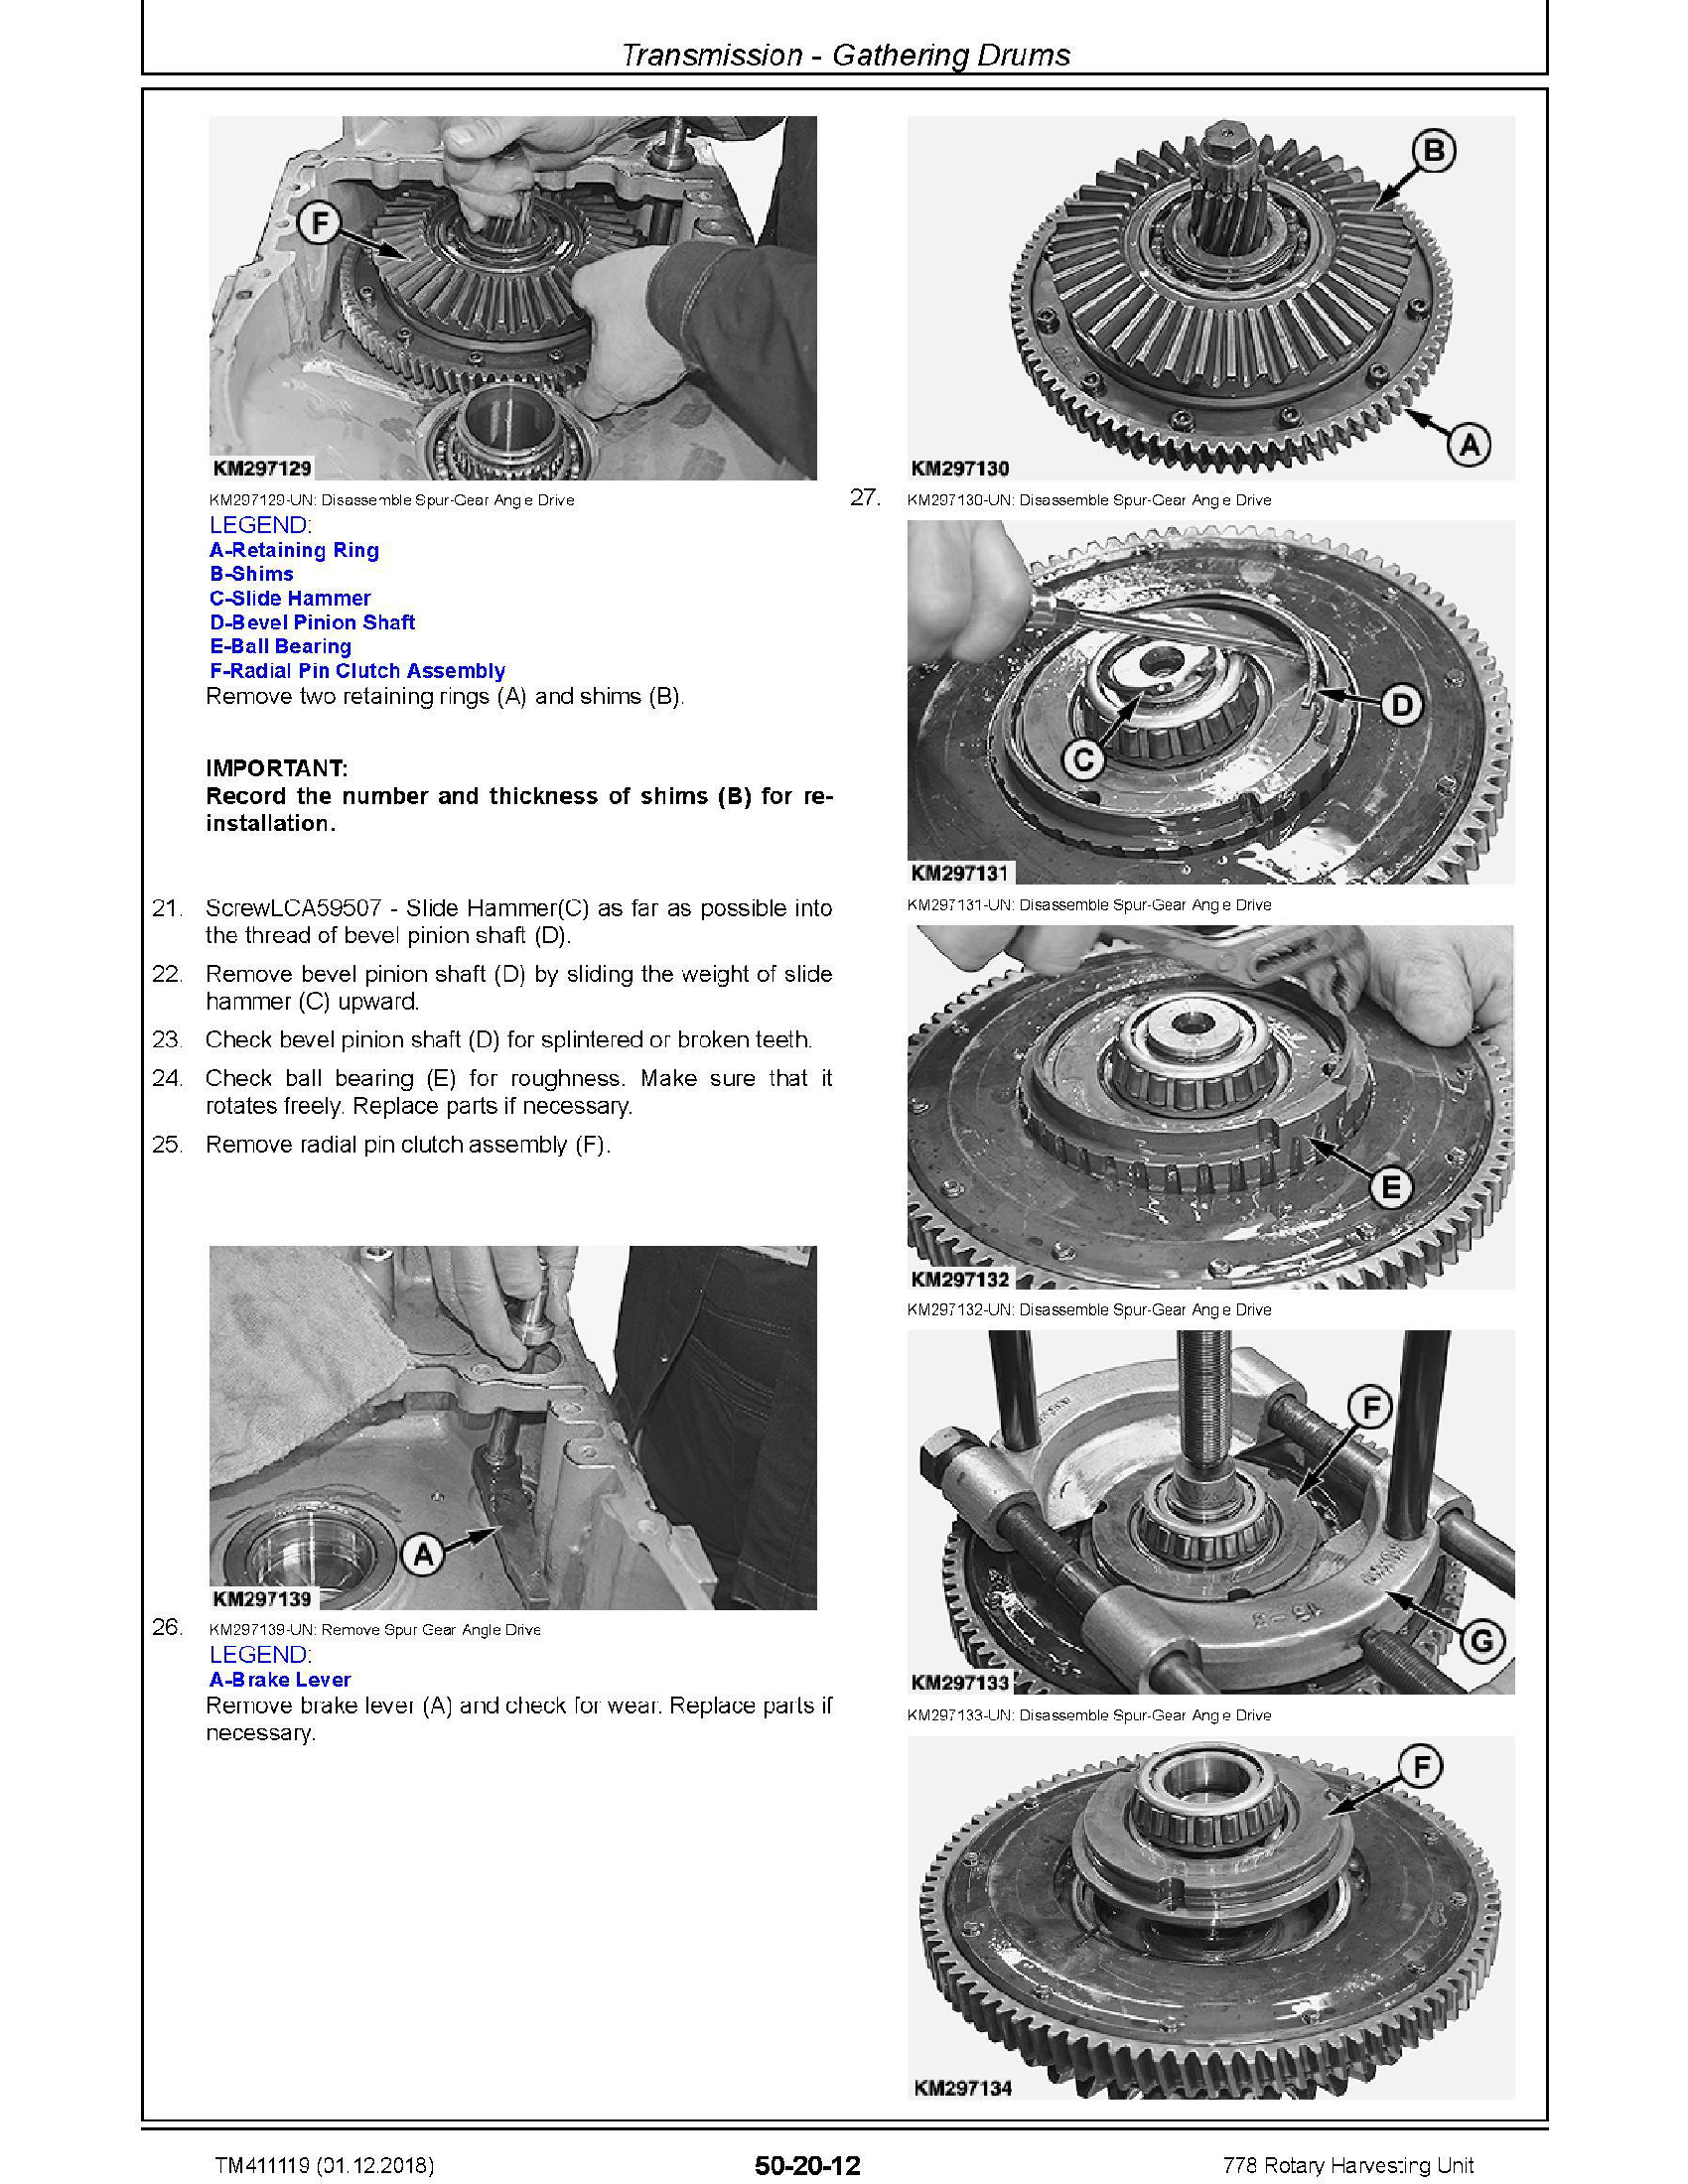 John Deere 127522 manual pdf